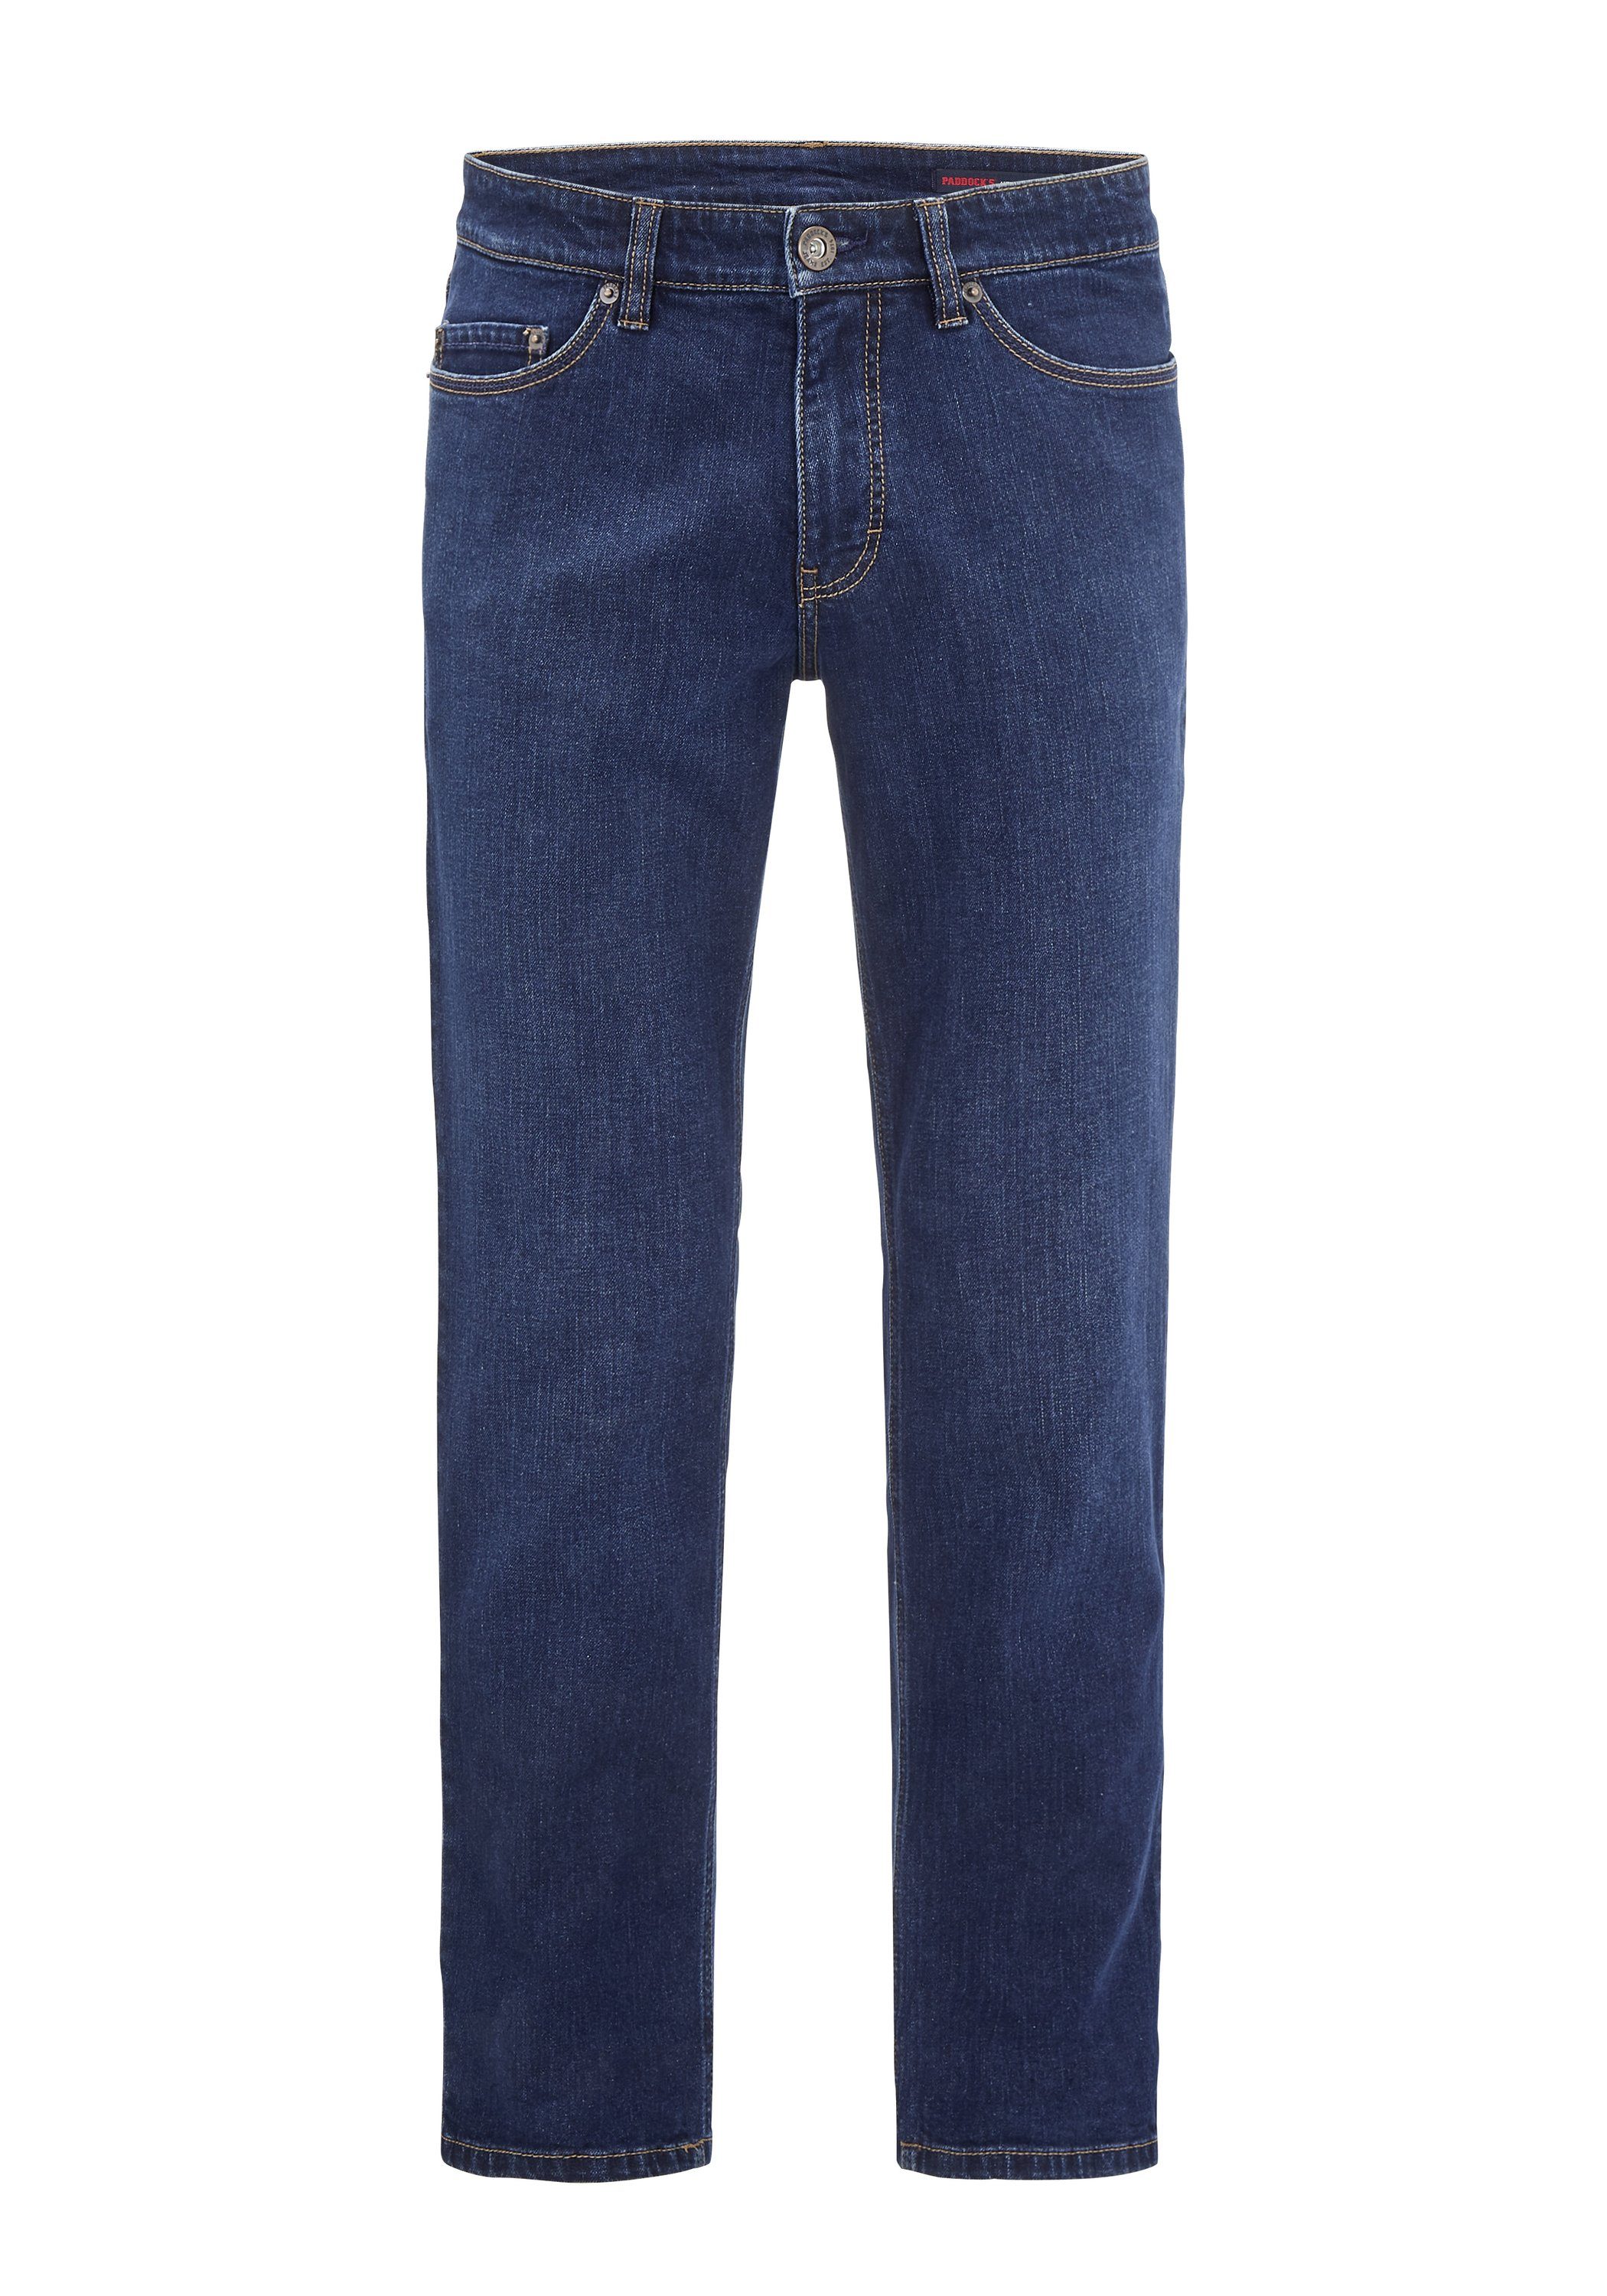 Paddock's Slim-fit-Jeans Slim-Fit dark PIPE stone Elastische Jeans used PIPE